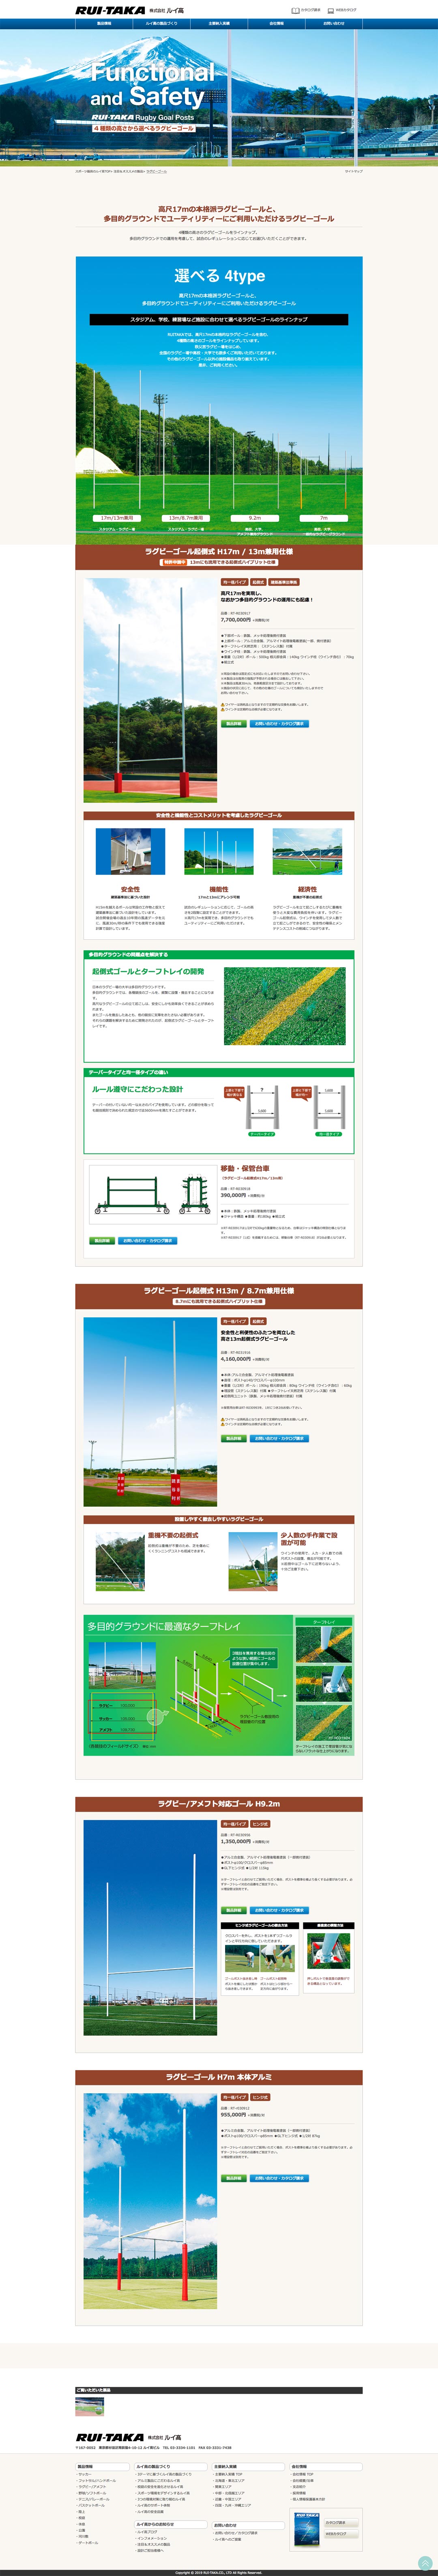 スポーツ施設製造メーカー ホームページ デザイン サンプル 特設ページ/ラグビー